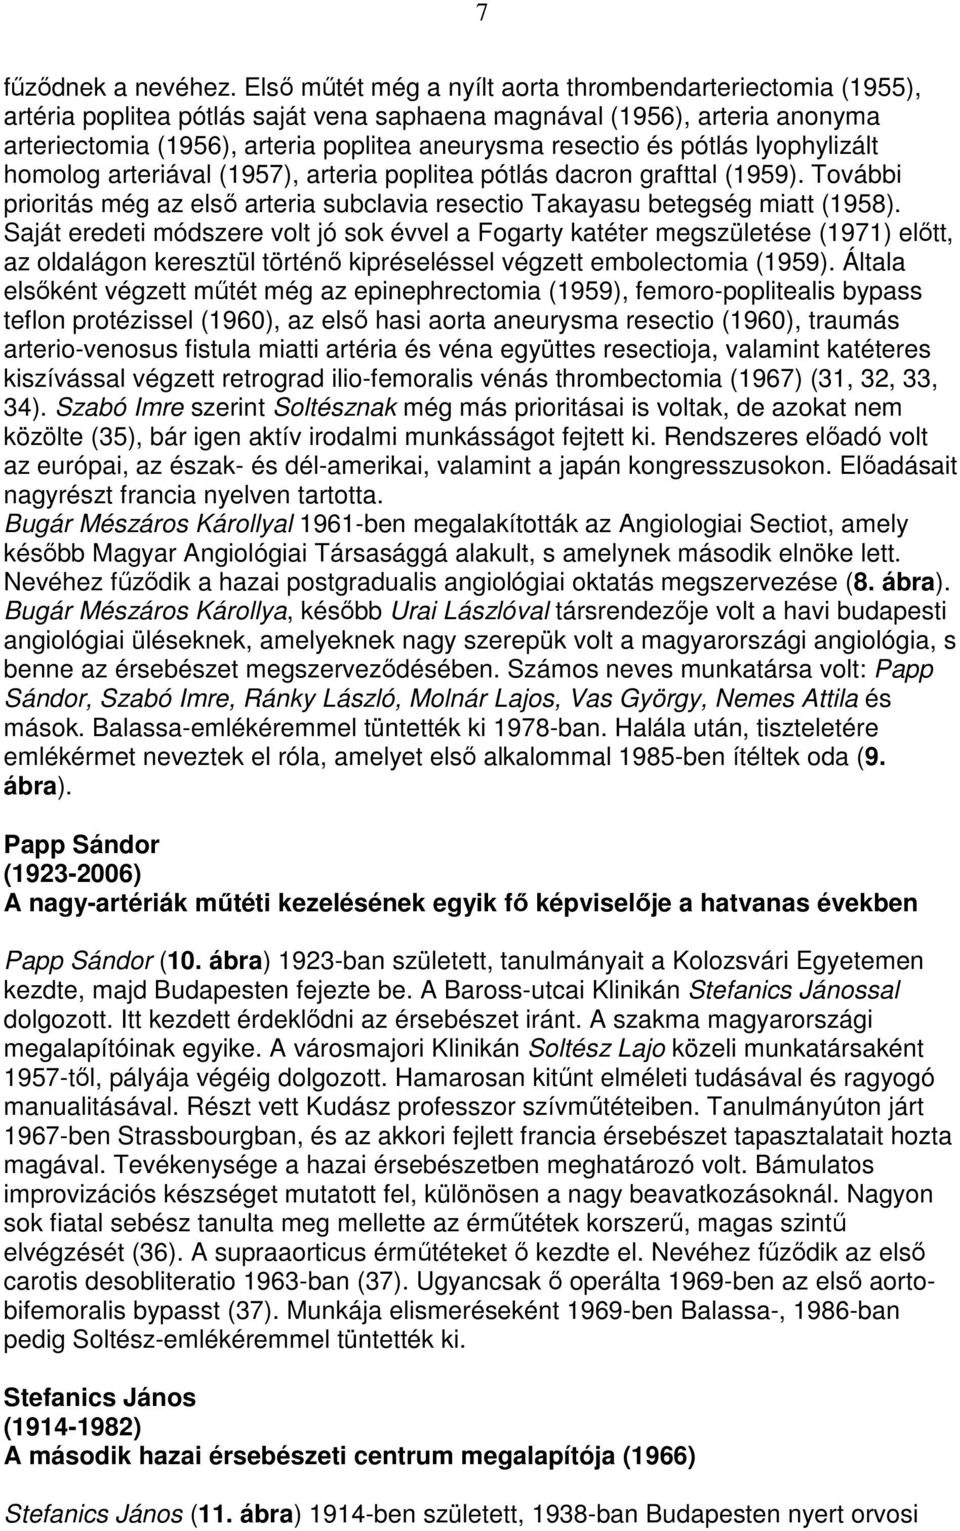 pótlás lyophylizált homolog arteriával (1957), arteria poplitea pótlás dacron grafttal (1959). További prioritás még az elsı arteria subclavia resectio Takayasu betegség miatt (1958).